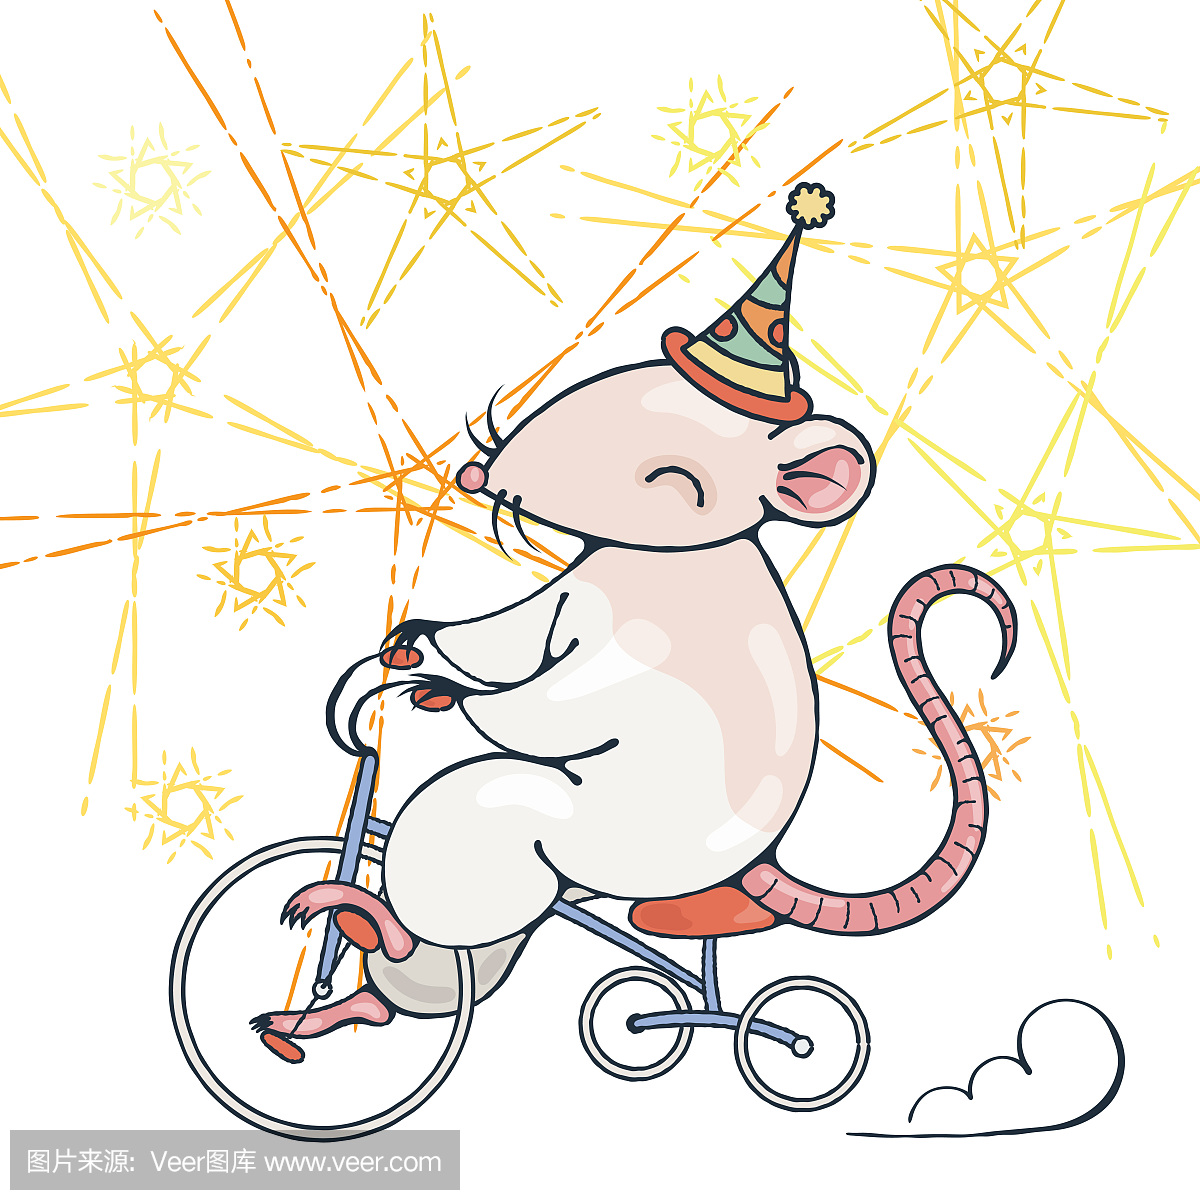 与马戏团老鼠在一辆自行车上的插图。